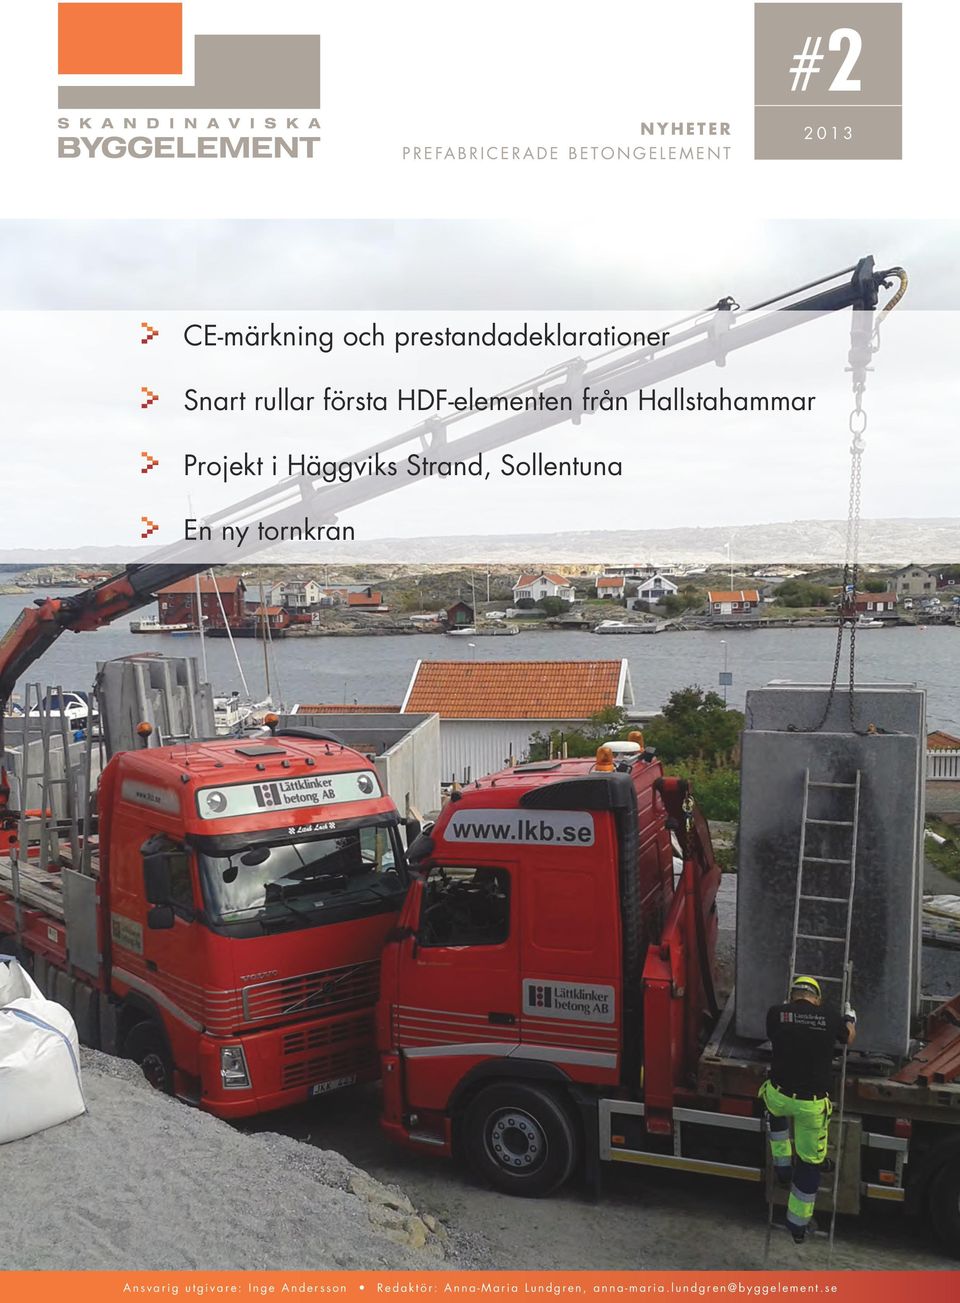 Hallstahammar Projekt i Häggviks Strand, Sollentuna En ny tornkran